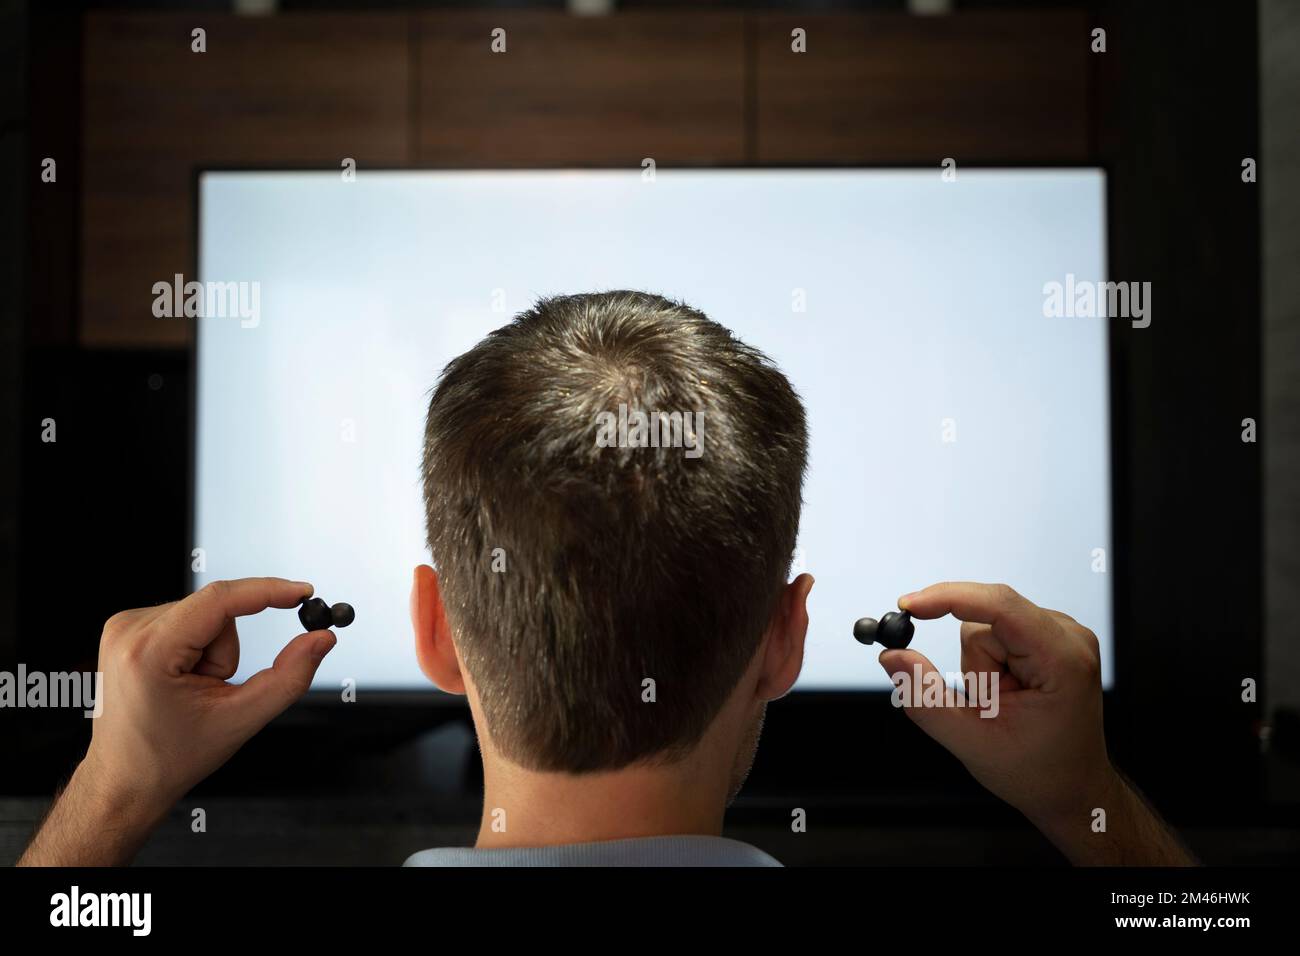 Ein Mann steckt Kopfhörer in sein Ohr vor den Hintergrund eines Fernsehbildschirms. Nachts Fernsehen mit Kopfhörern. Stockfoto